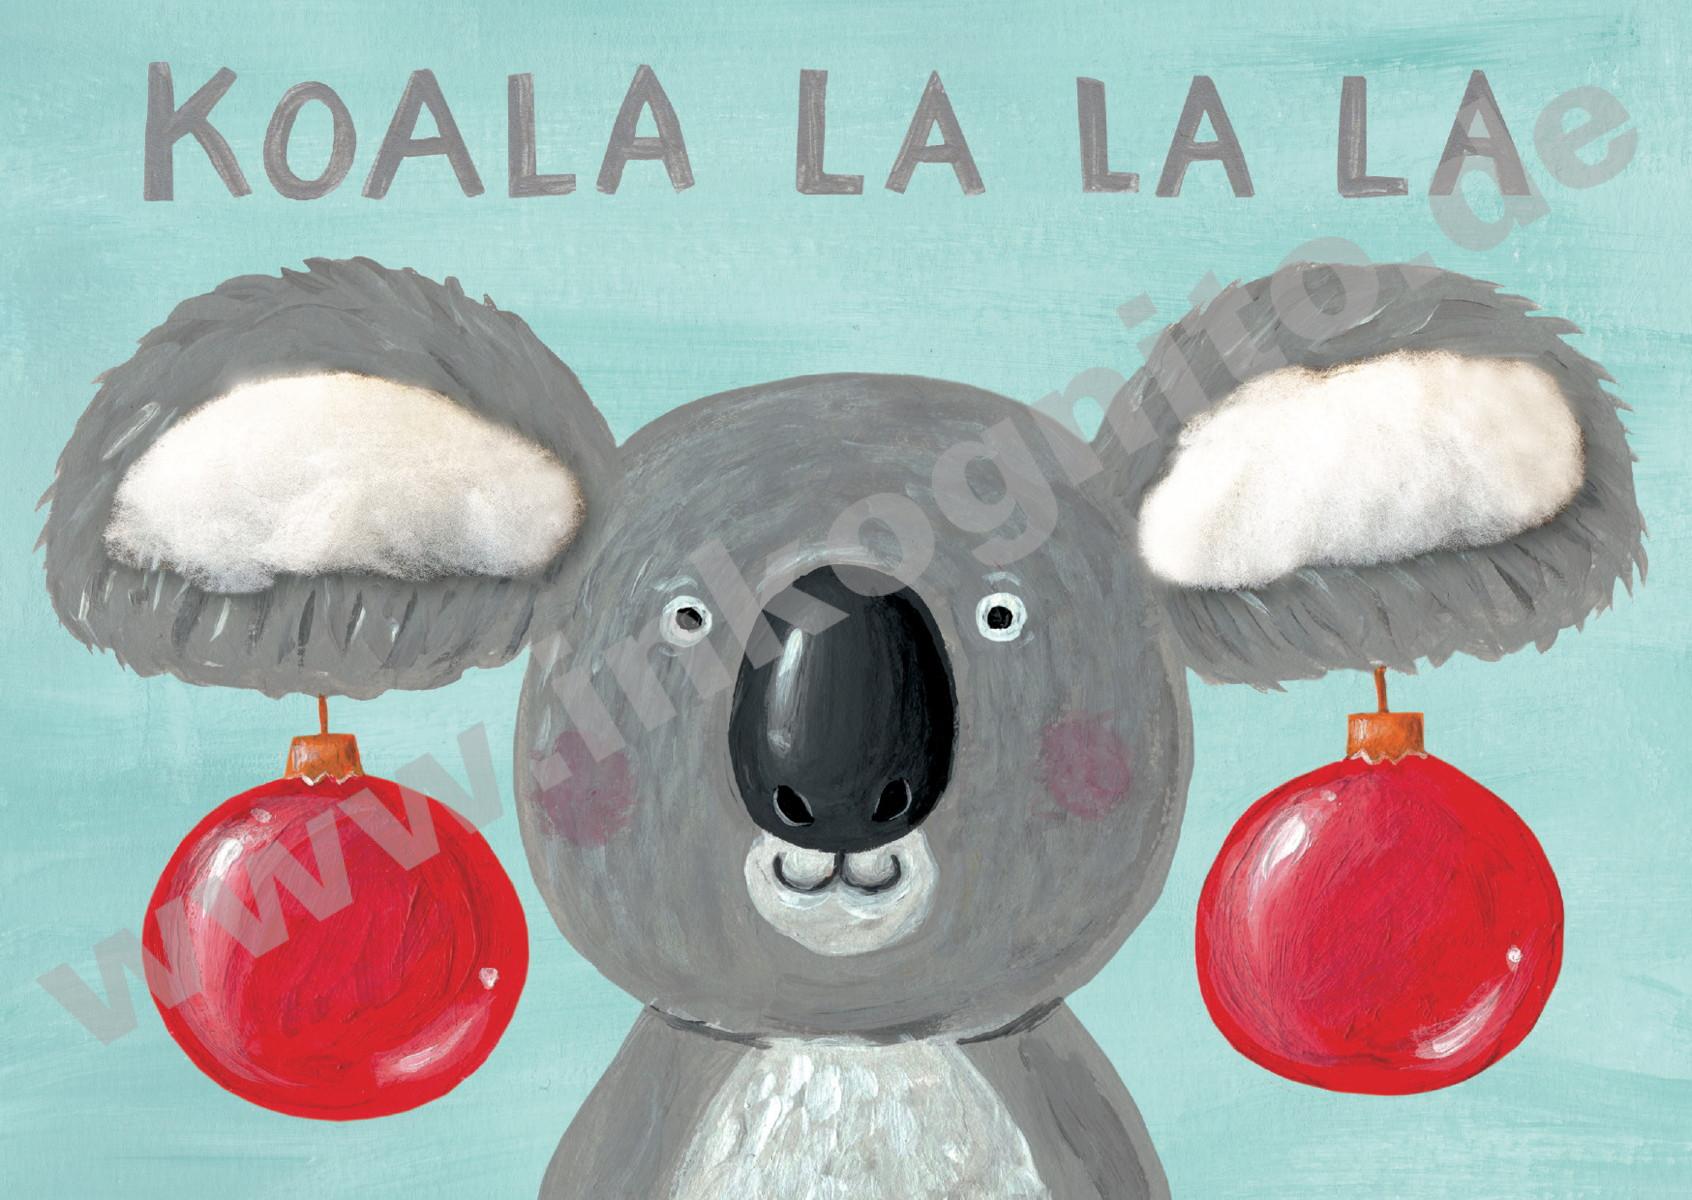 Plüschkarte "Koala la la la"